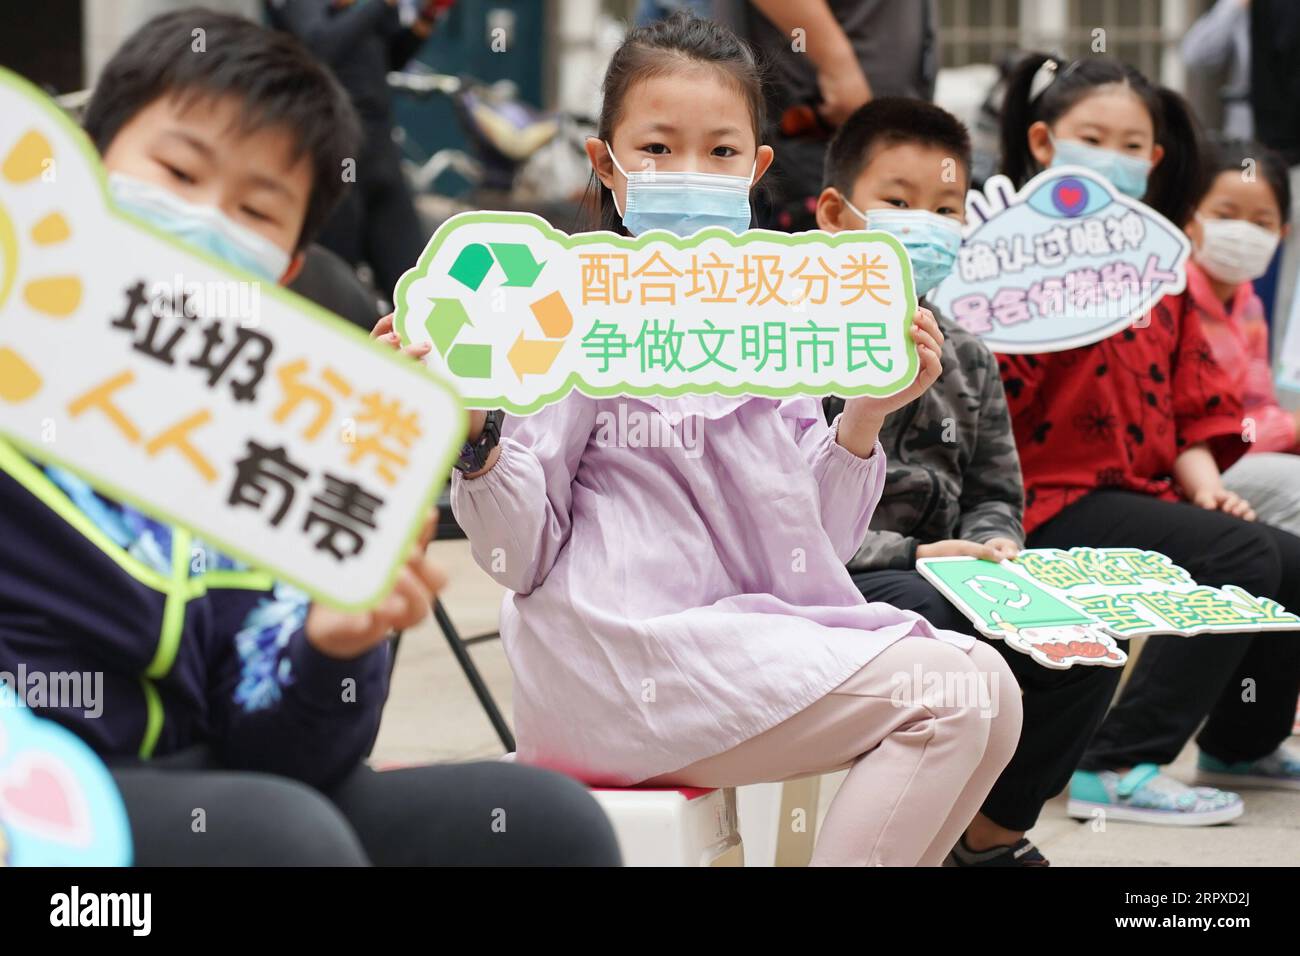 200517 -- PECHINO, 17 maggio 2020 -- giovani volontari mostrano cartelli che mostrano slogan per la smistamento dei rifiuti nella comunità residenziale Shaojiu nel distretto di Dongcheng a Pechino, capitale della Cina, 17 maggio 2020. La comunità Shaojiu di domenica ha avviato un bel progetto di gestione dei rifiuti domestici. Sono state adottate varie misure, tra cui l'installazione di contenitori intelligenti per la raccolta rifiuti e la fornitura di sacchetti per la raccolta rifiuti tracciabili e diversi codici QR alle famiglie, per aiutare i residenti a impegnarsi meglio nella smistamento dei rifiuti. Il 1° maggio, Pechino ha iniziato a effettuare la smistamento obbligatorio dei rifiuti in nuovi sforzi per proteggere l'ambiente Foto Stock